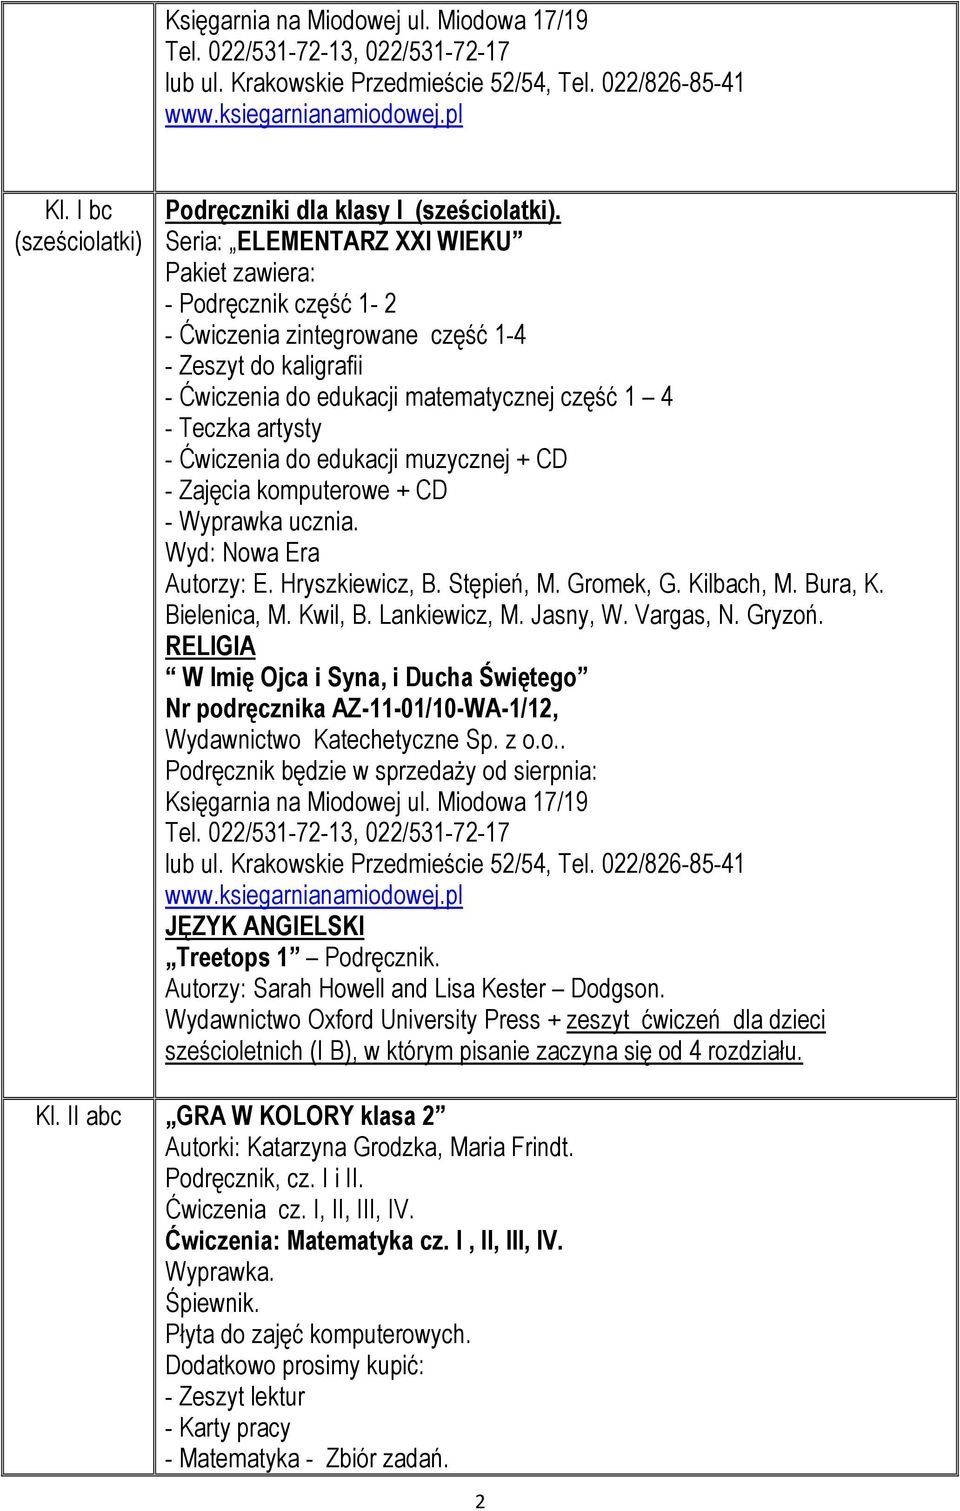 edukacji muzycznej + CD - Zajęcia komputerowe + CD - Wyprawka ucznia. Autorzy: E. Hryszkiewicz, B. Stępień, M. Gromek, G. Kilbach, M. Bura, K. Bielenica, M. Kwil, B. Lankiewicz, M. Jasny, W.